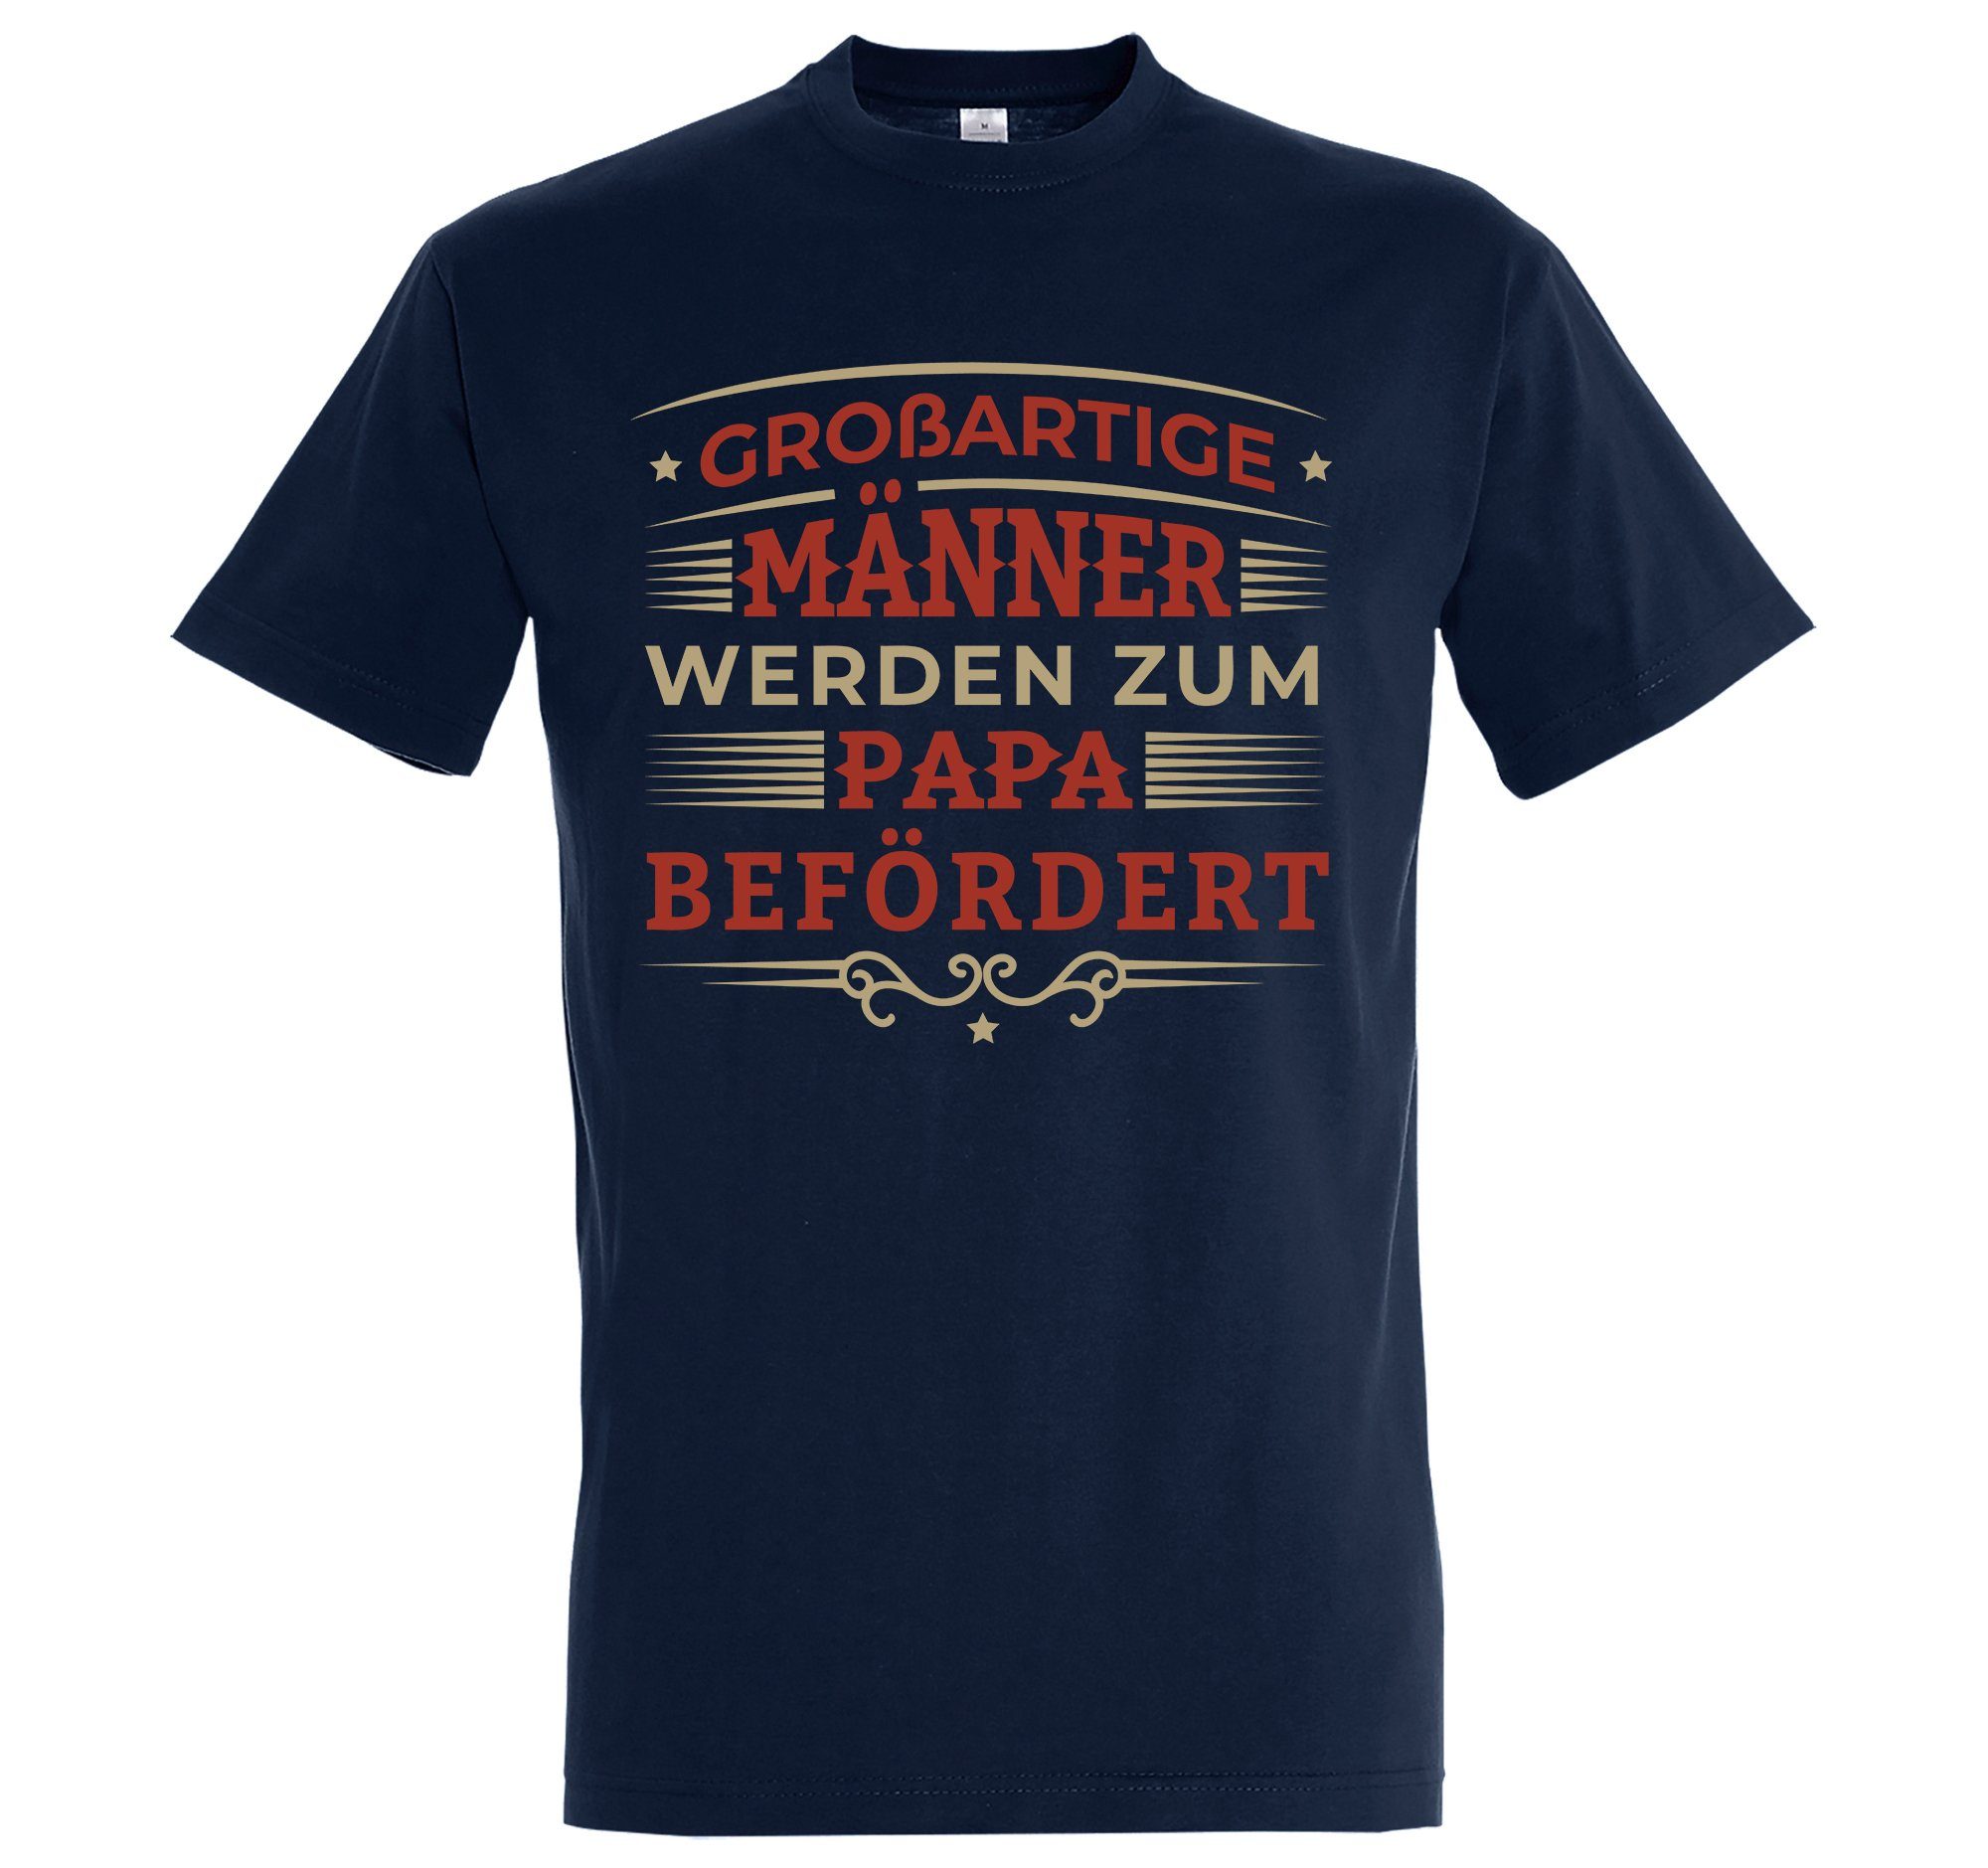 "Männer Papa Youth Befördert" mit T-Shirt trendigem Zum Werden Frontprint Navyblau Shirt Herren Designz